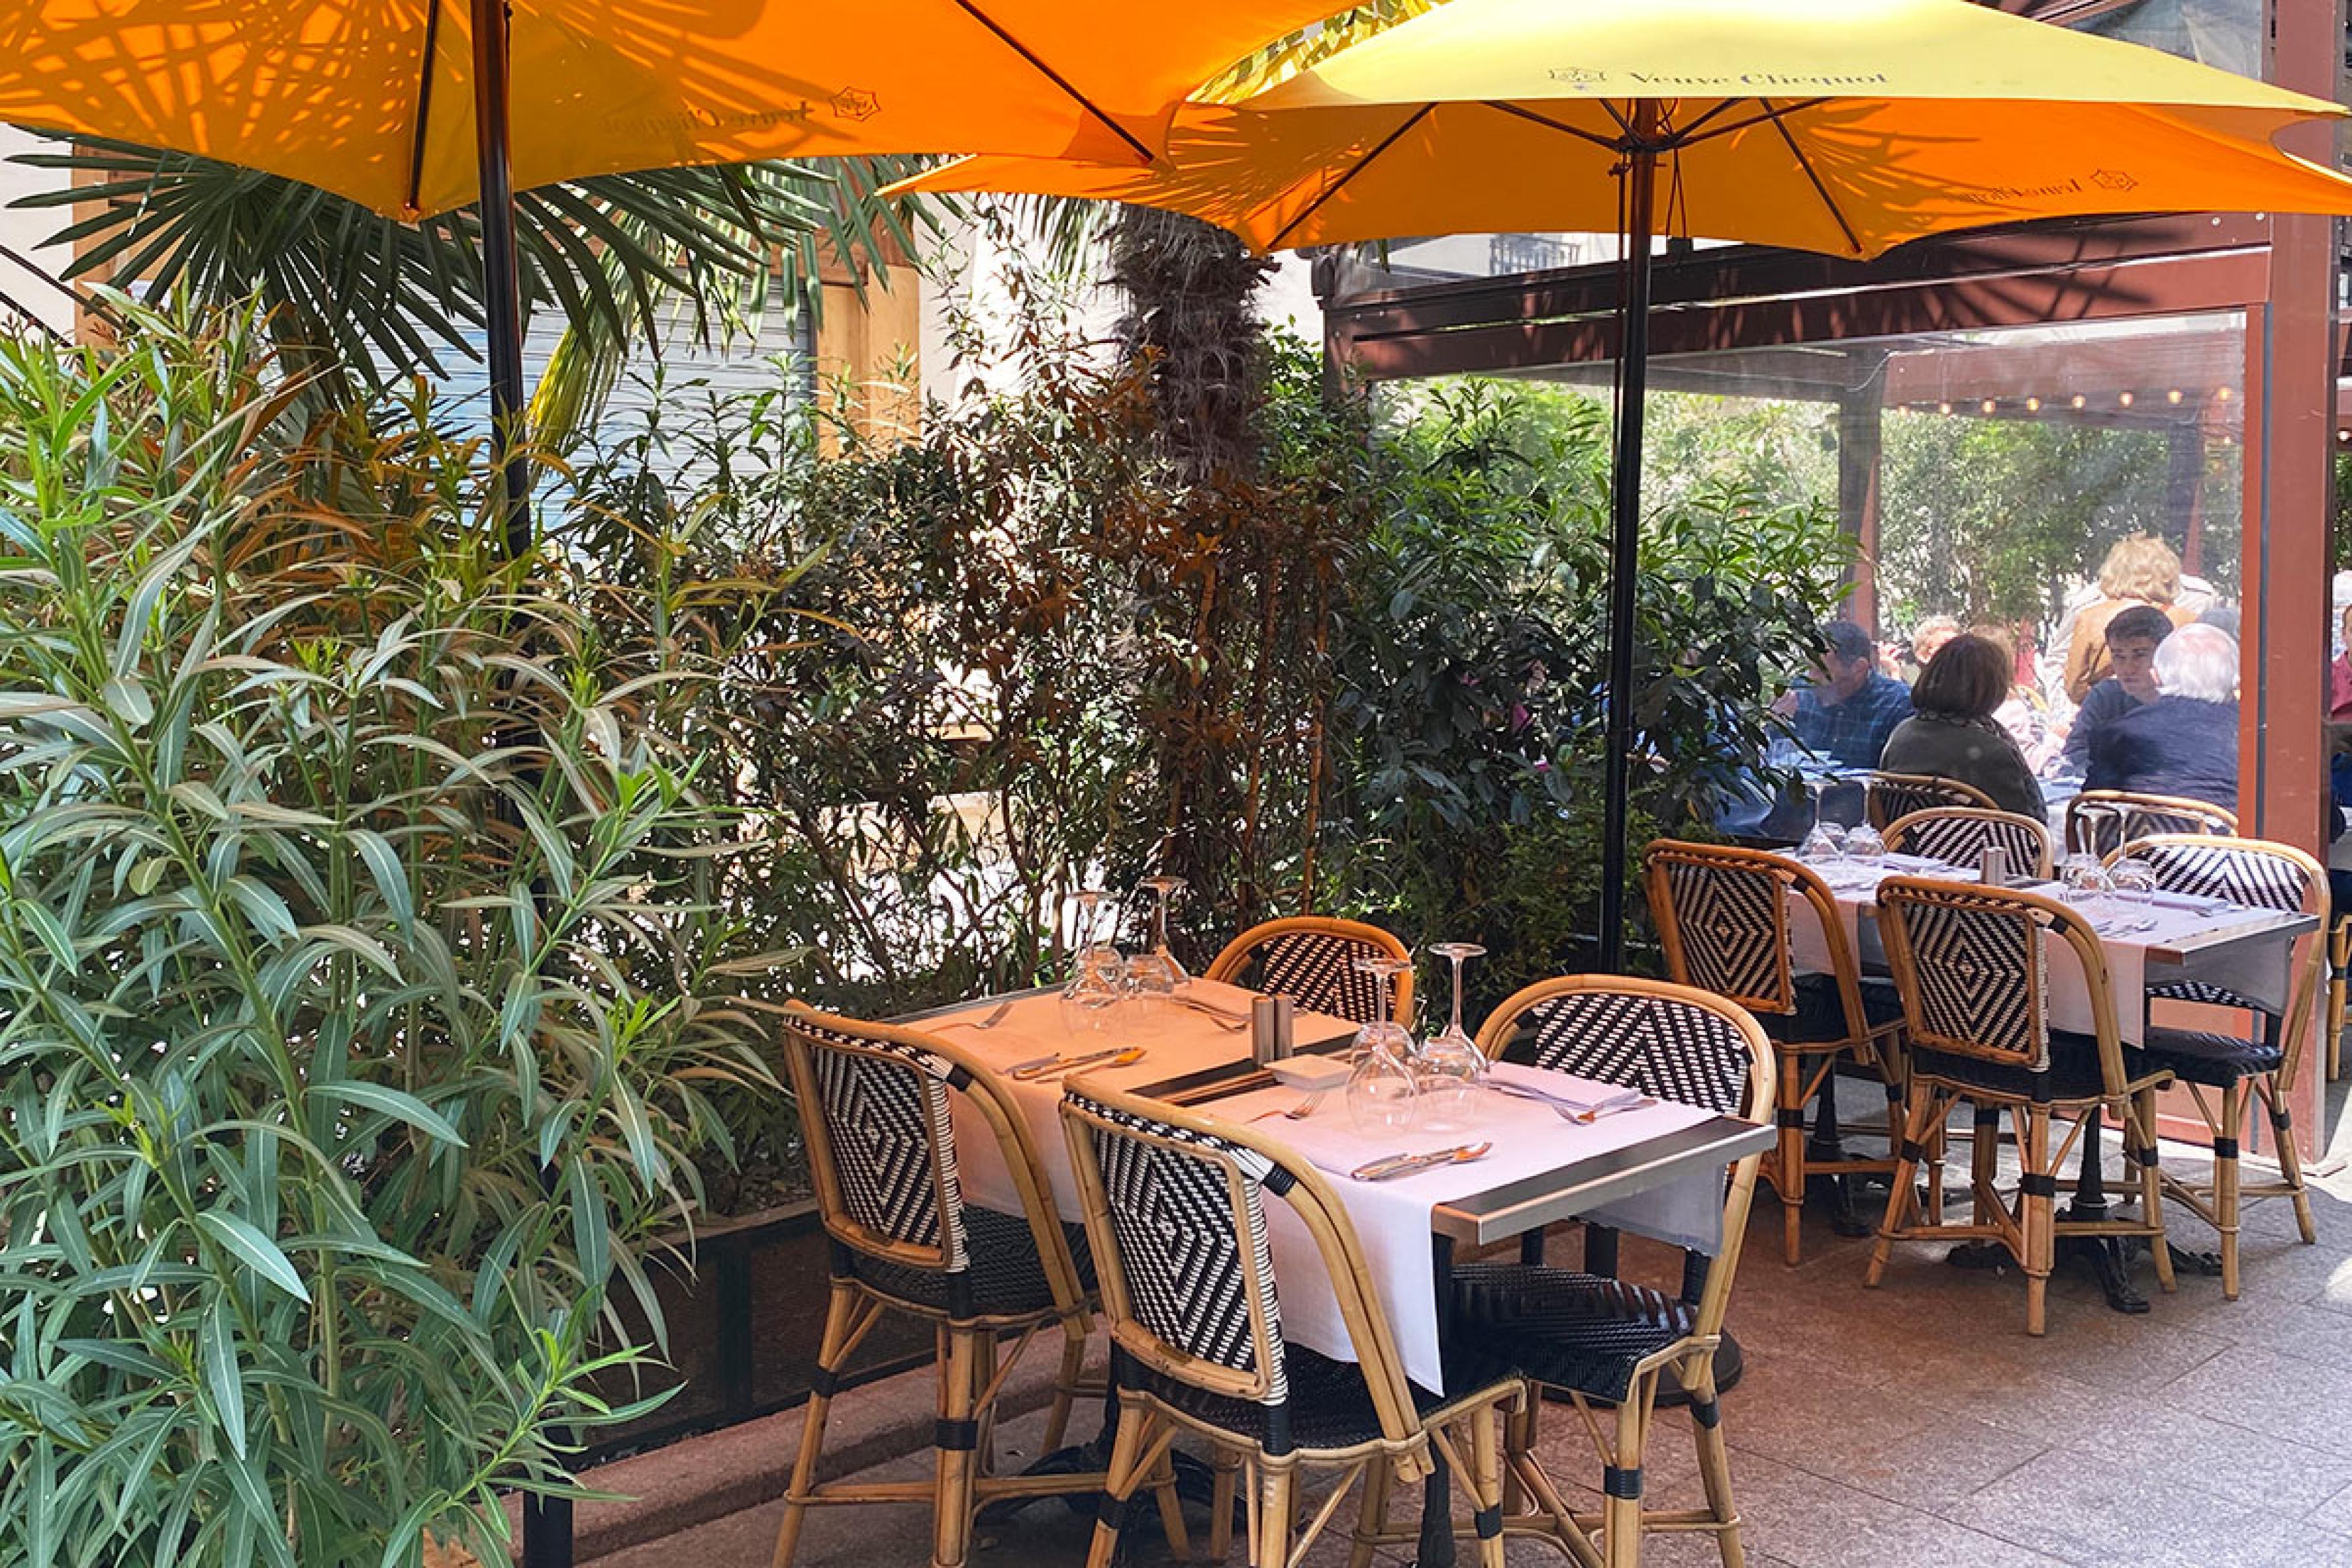 la recamier paris outdoor cafe seating under yellow umbrella